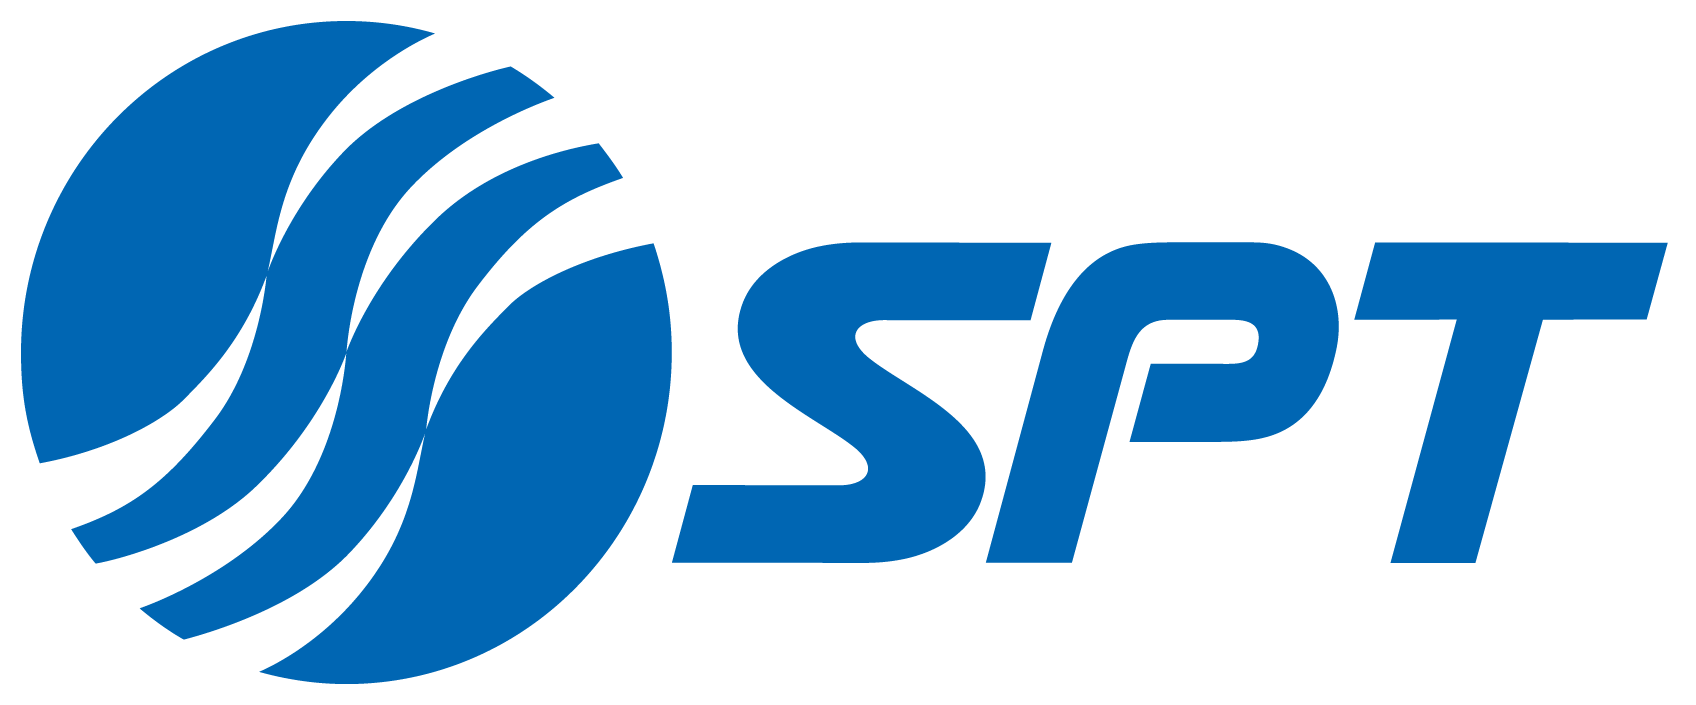 SPT Telecom Logo photo - 1